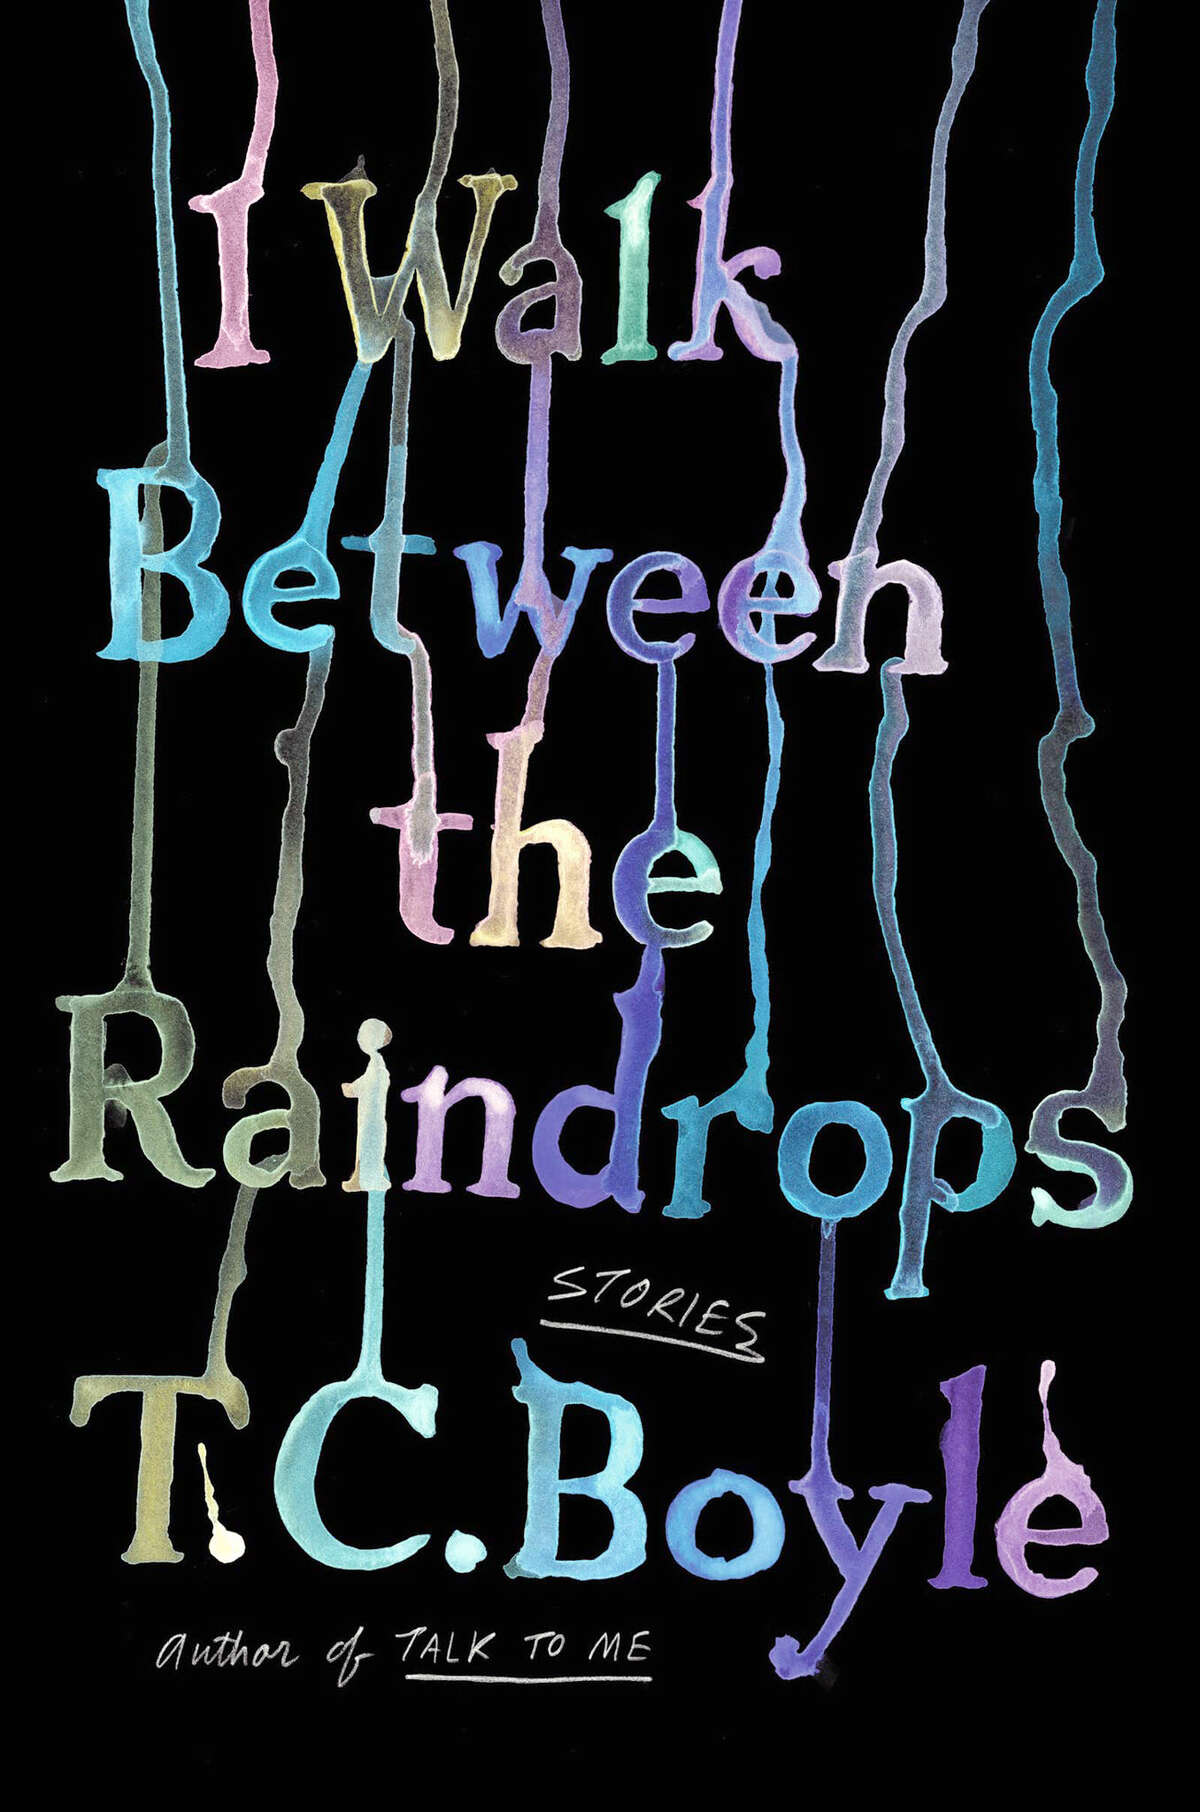 "I Walk Between the Raindrops"